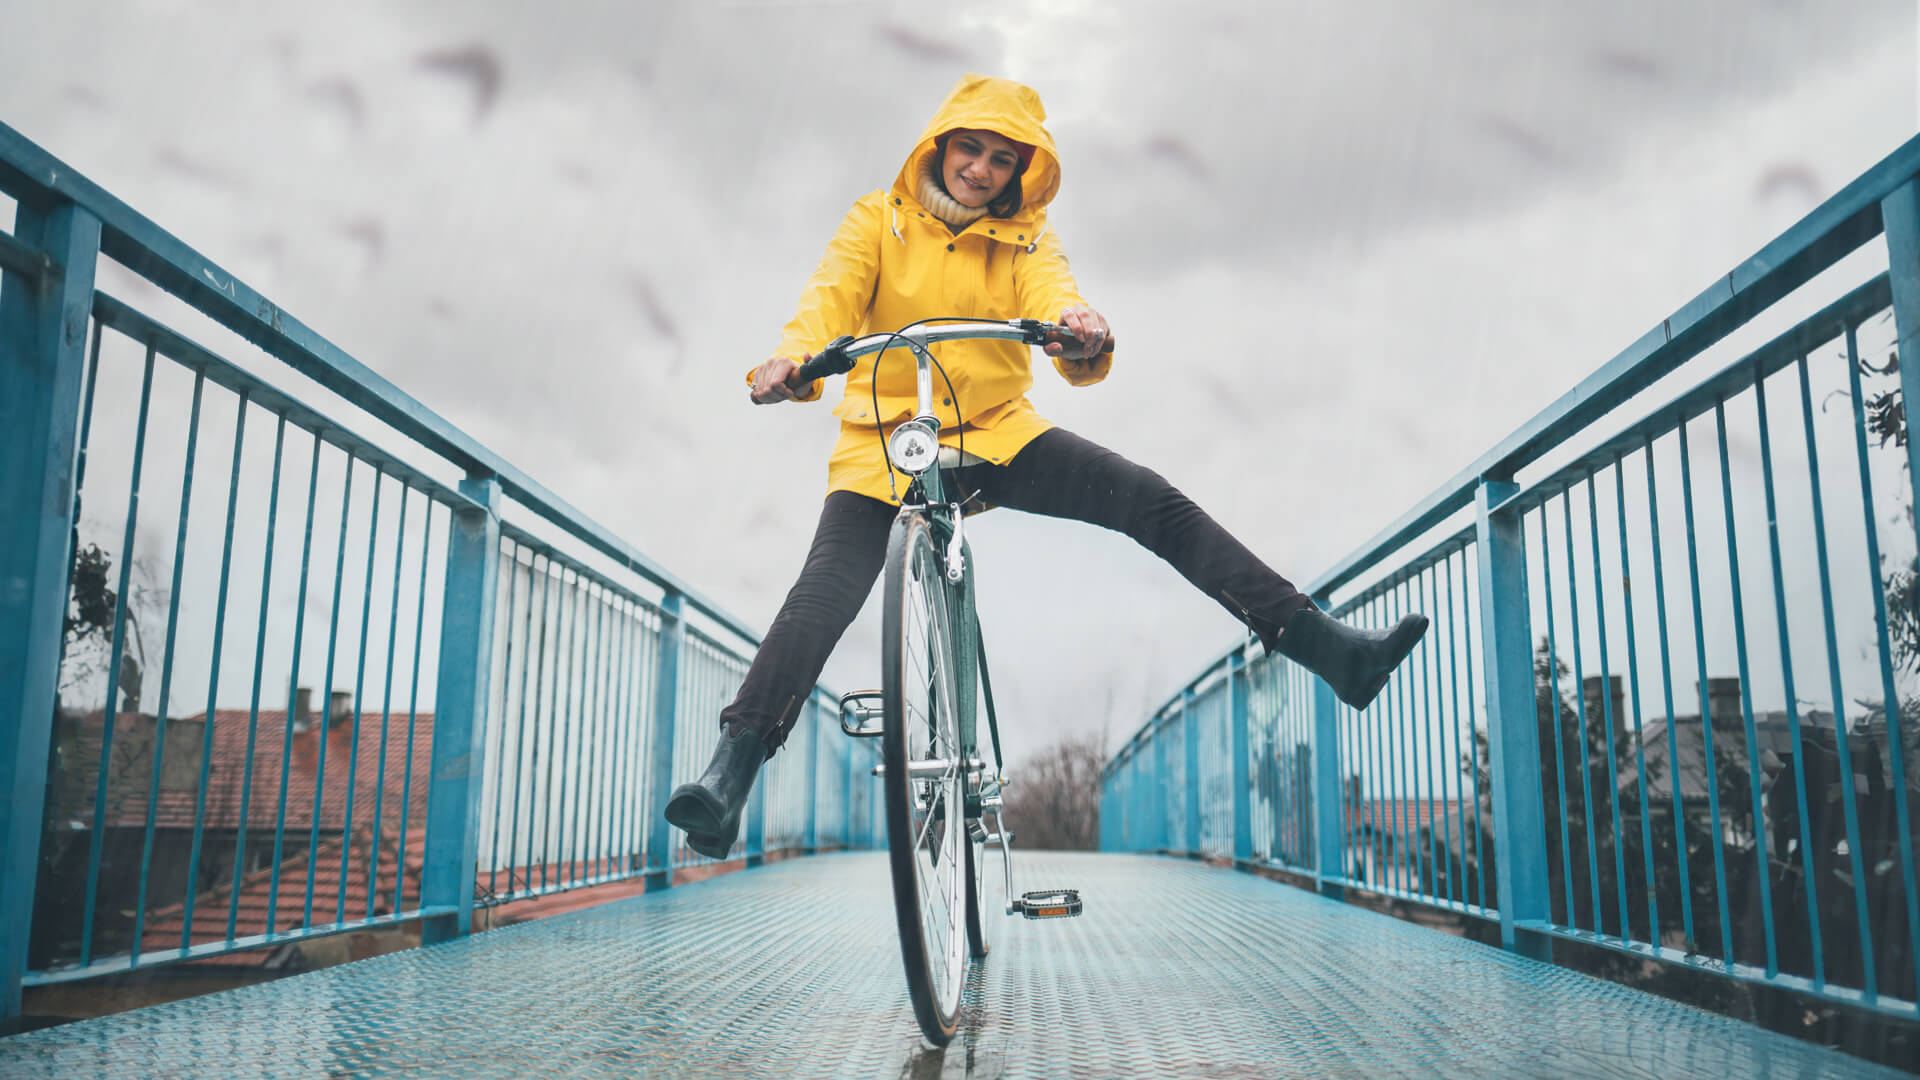 Equipements et vêtements cycliste contre la pluie à vélo